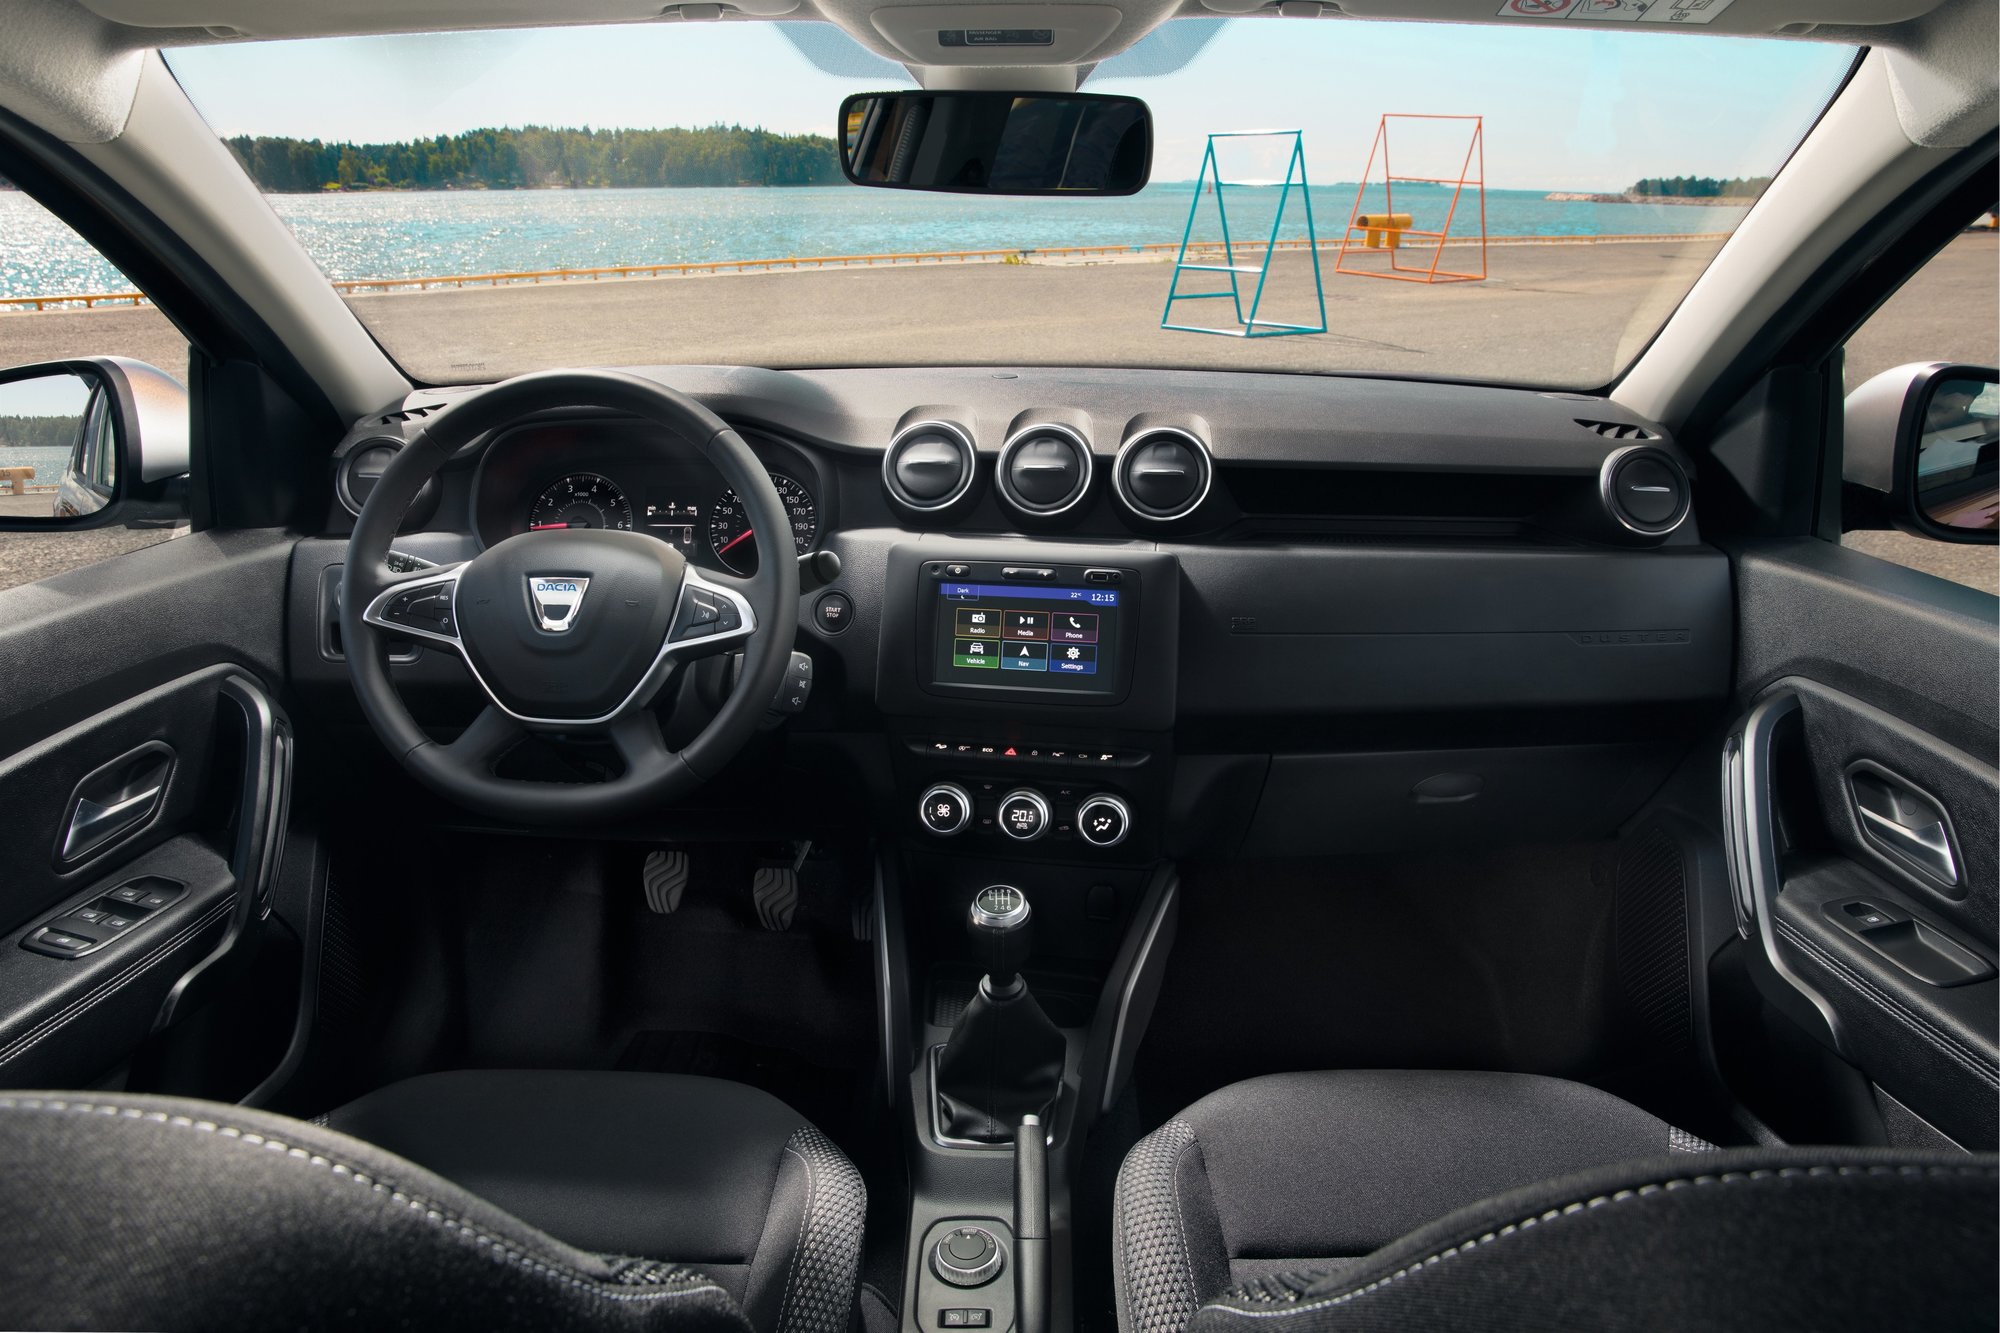 Nová Dacia Duster nabídne působivější exteriér a hodnotnější interiér - praktičnost a nízkou cenu si ovšem zachovává